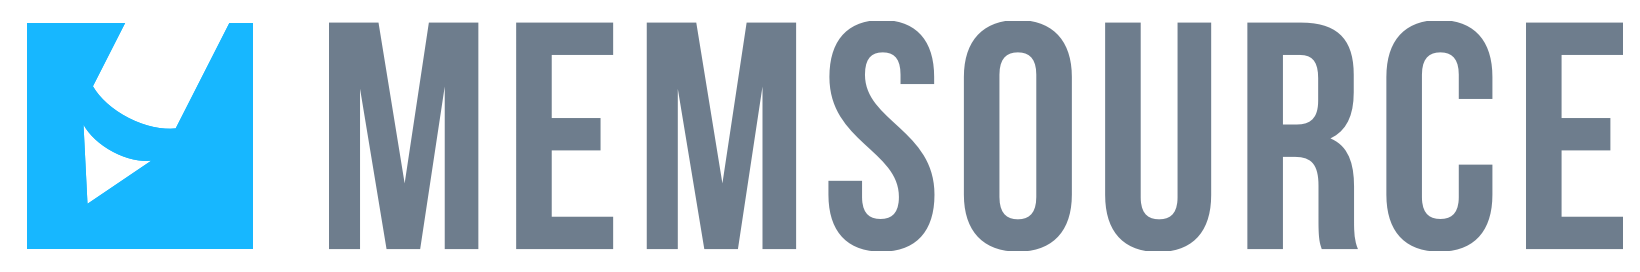 Memsource Logo 2